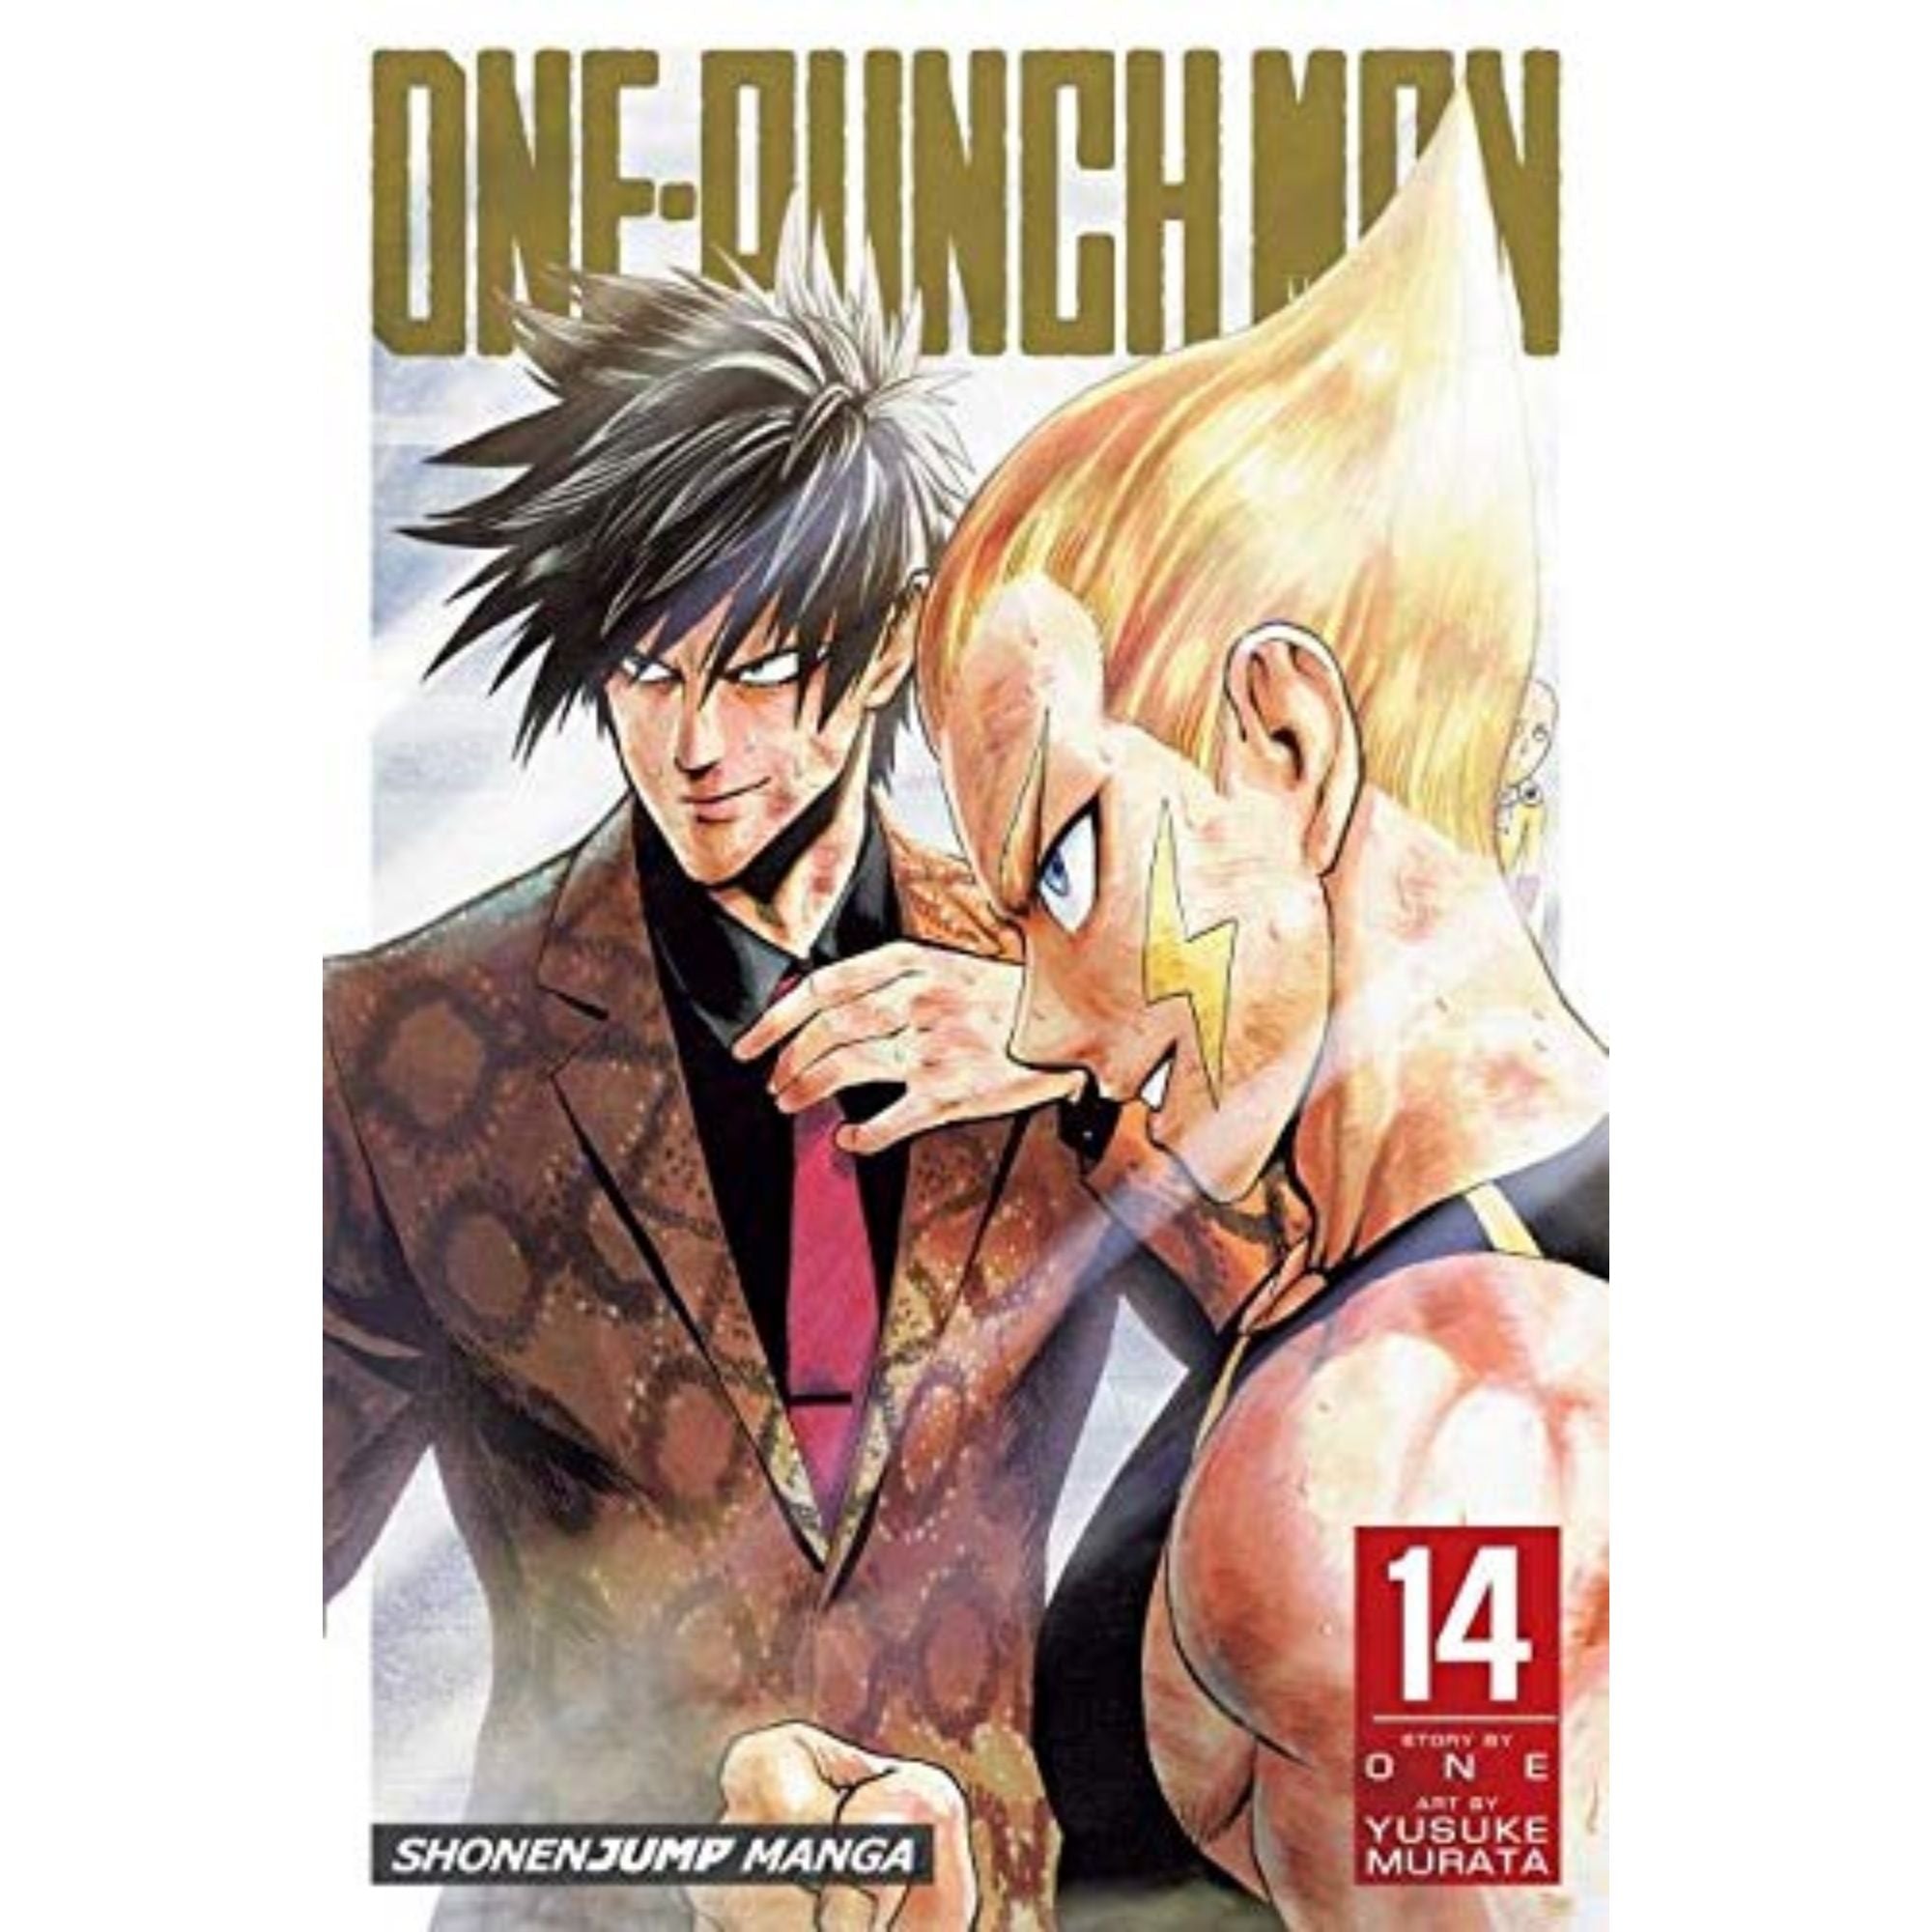 One Punch Man VOL.1-26 Complete set Comics Manga